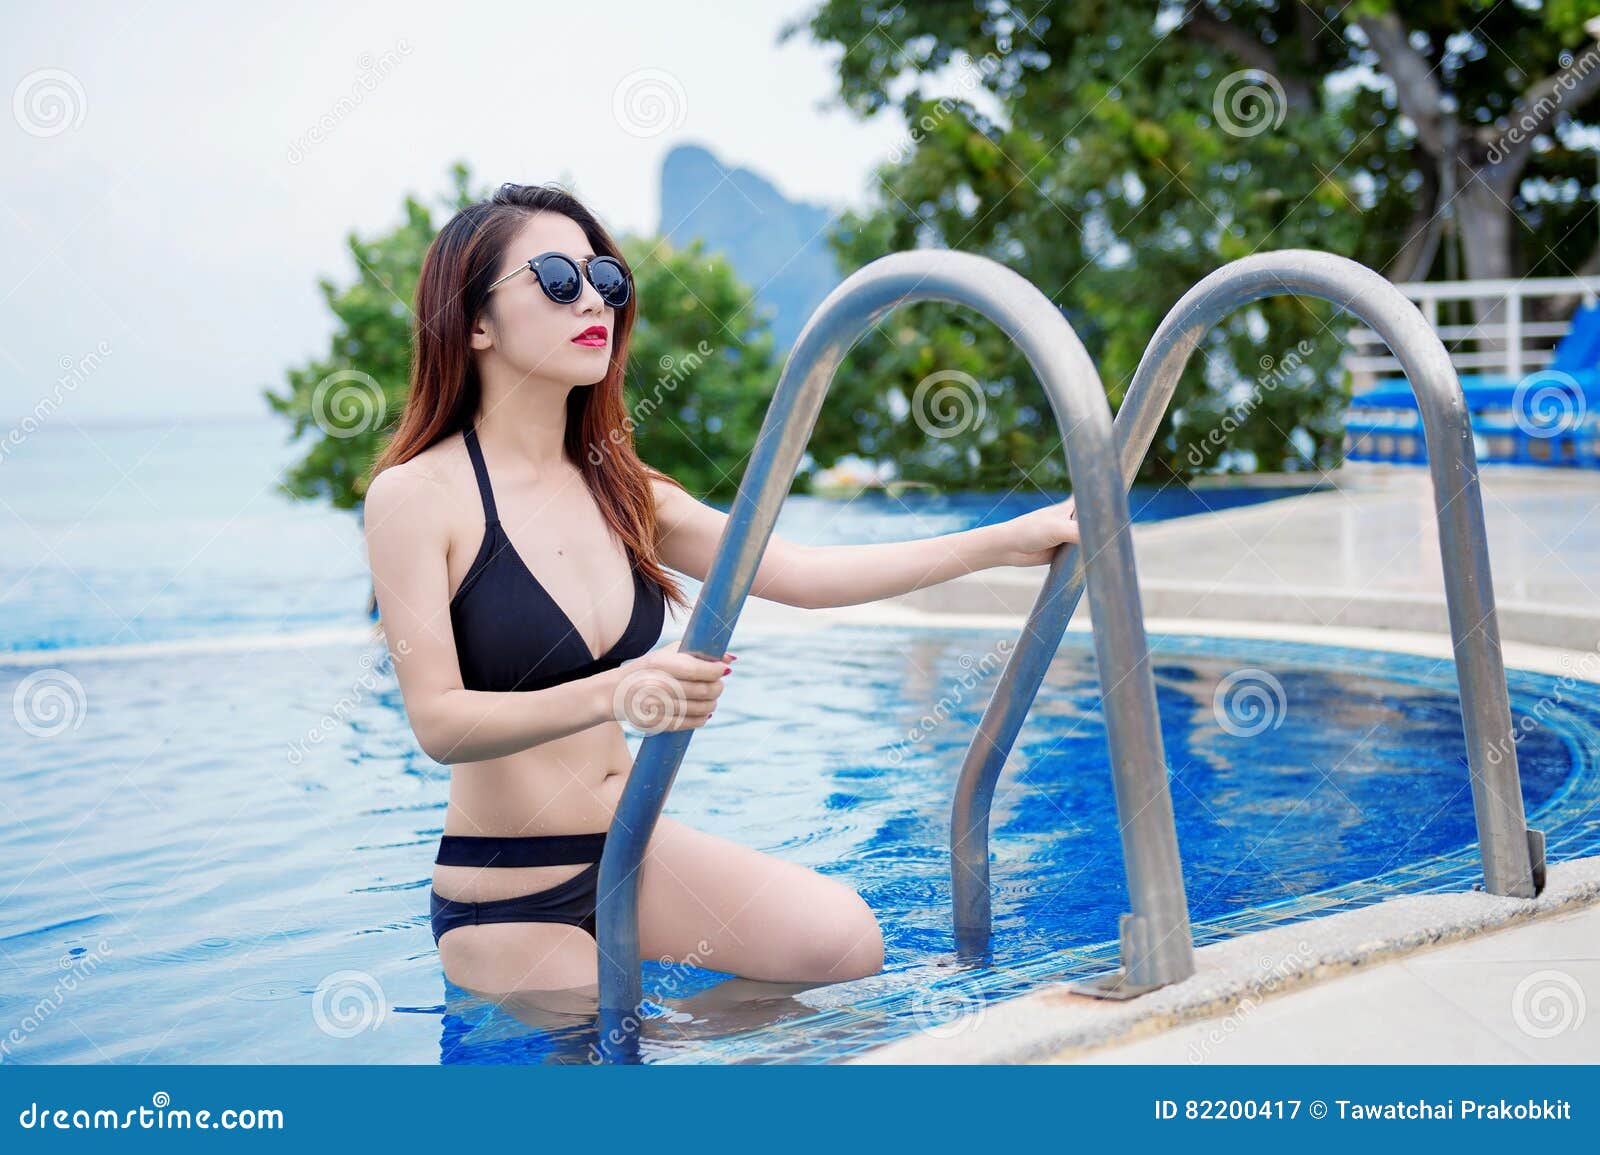 girl in bikini by indoor pool hd photo